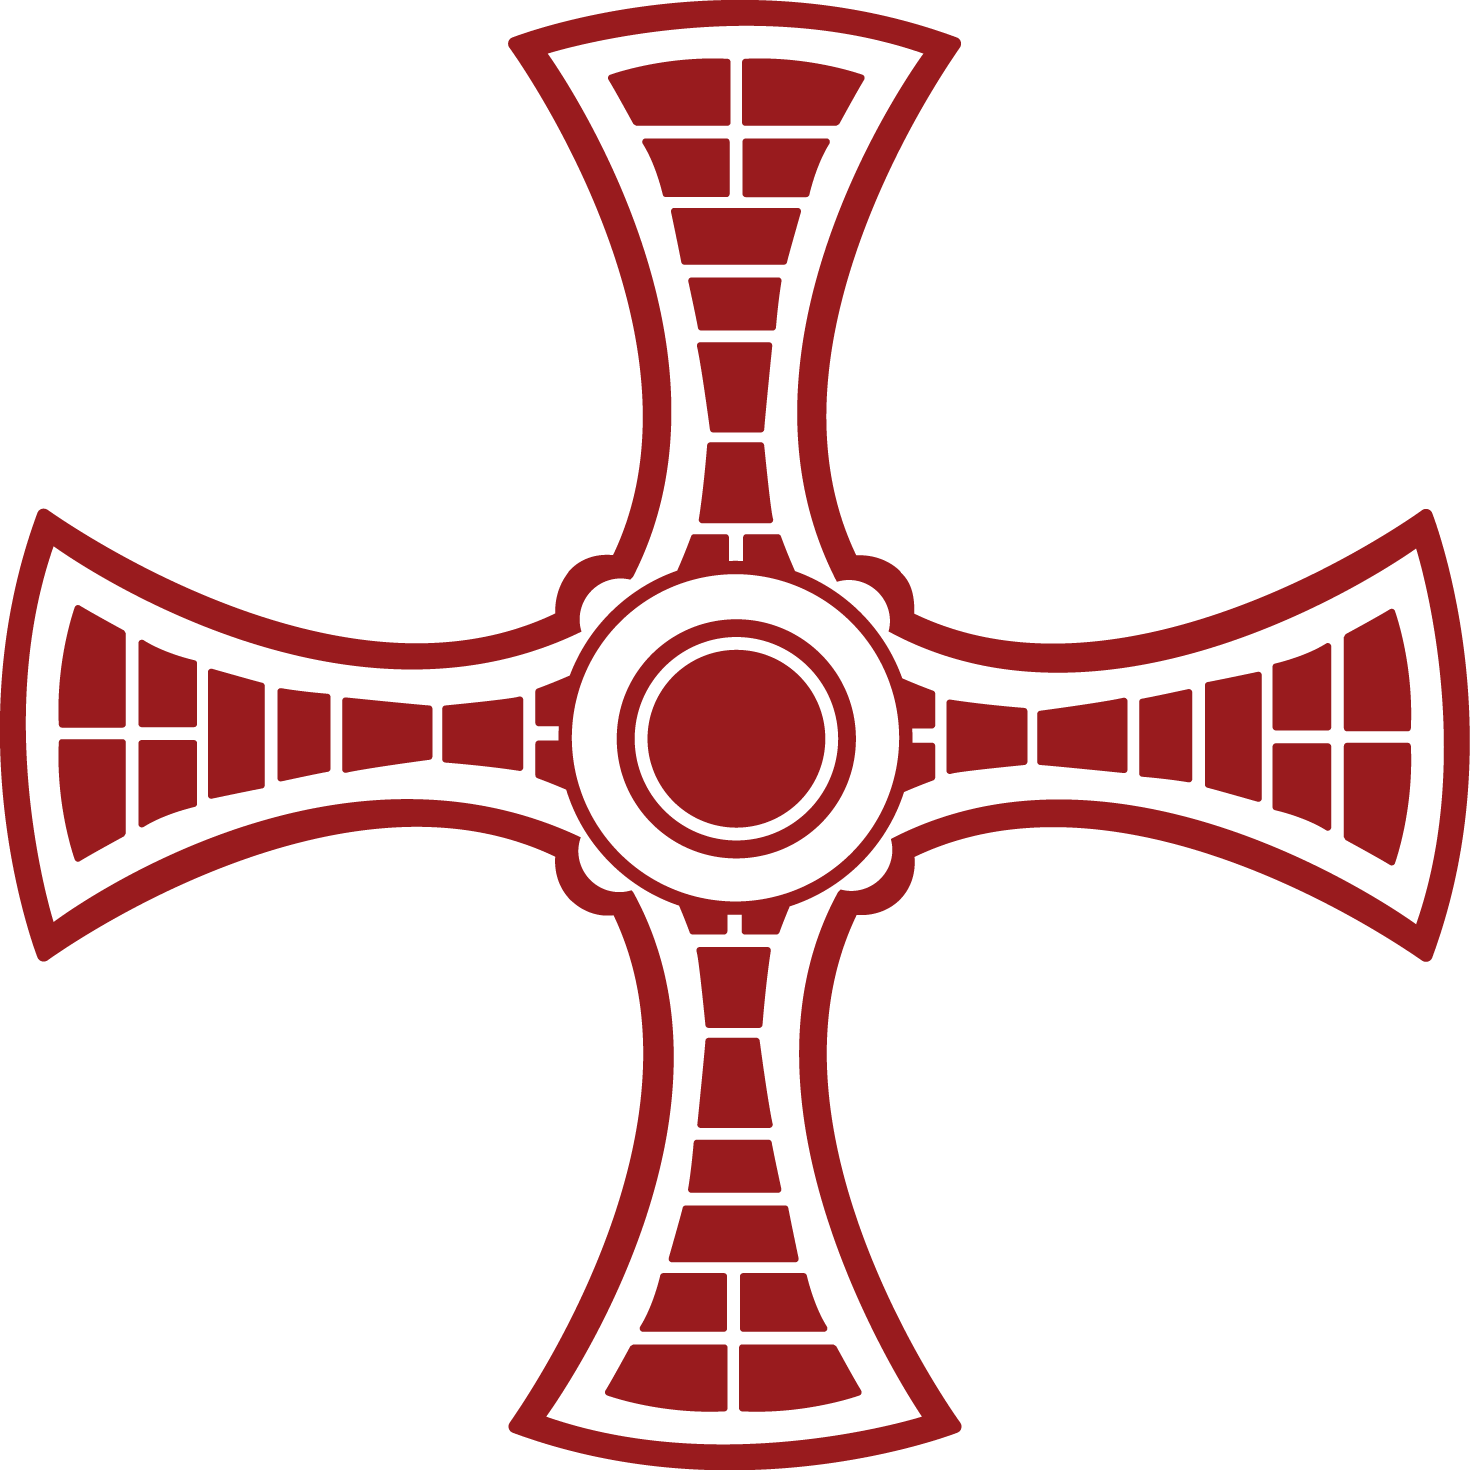 St Cuthbert's Cross